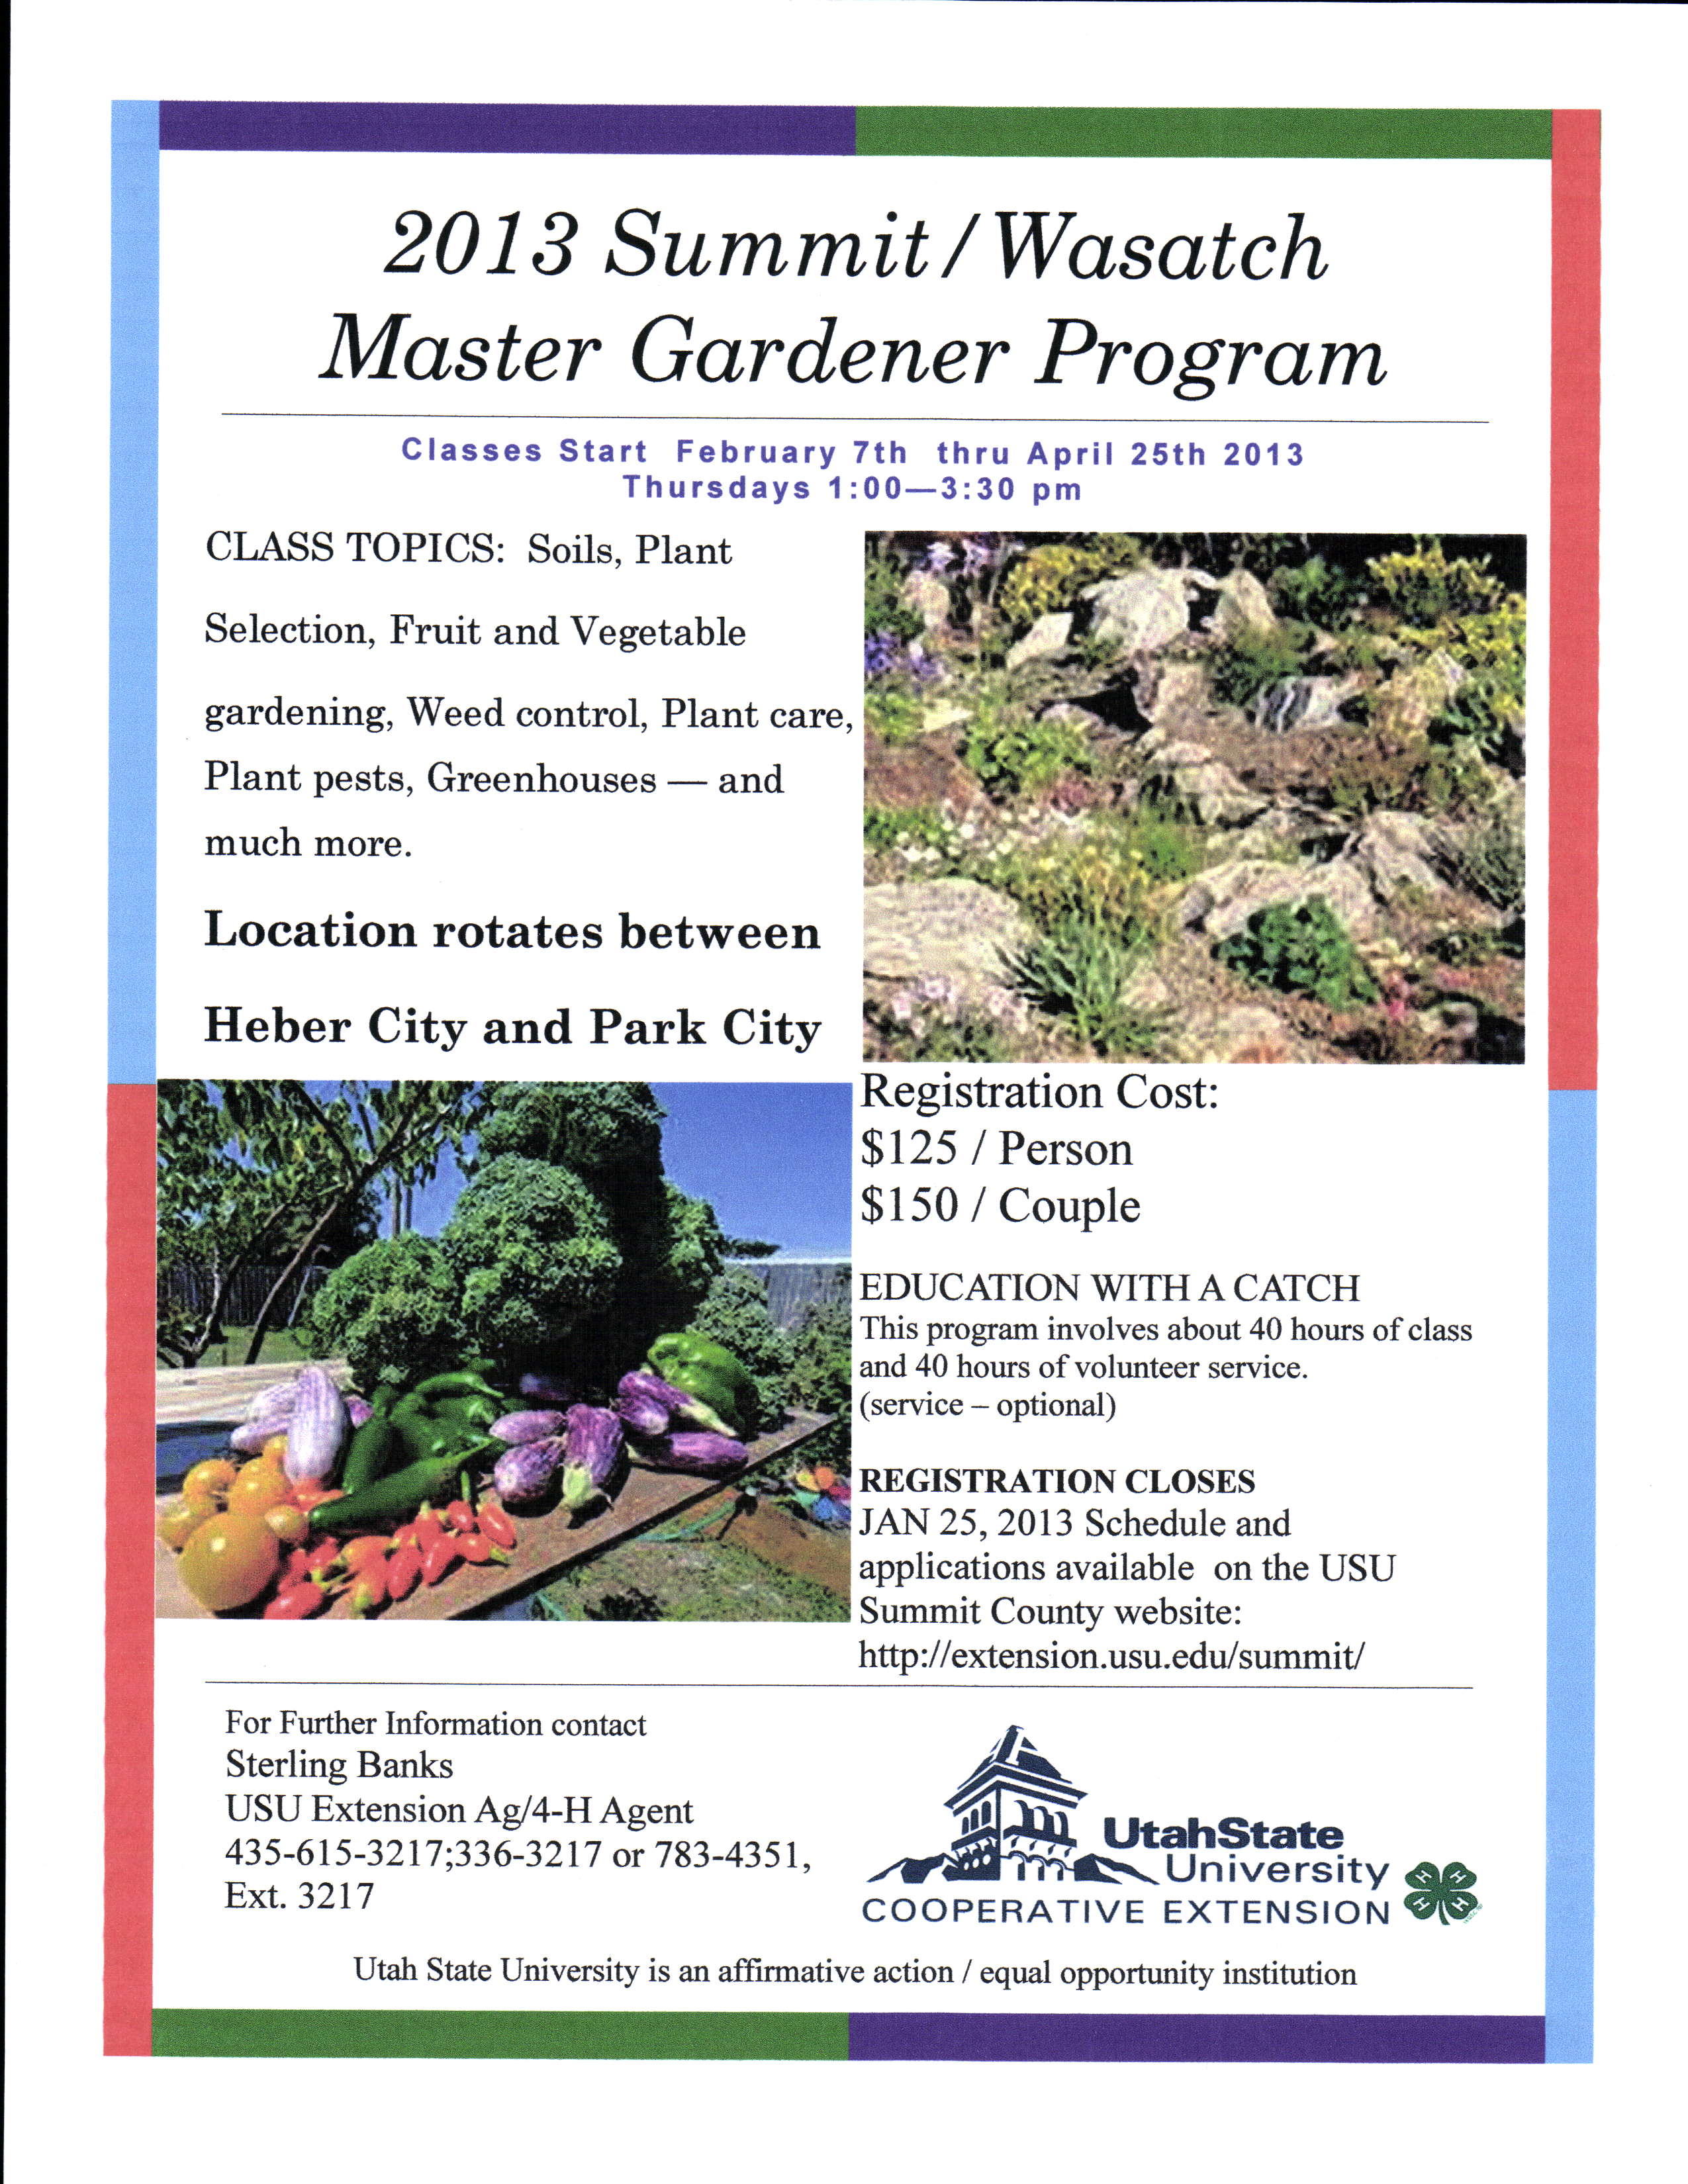 2013 Master Gardener Program Begins